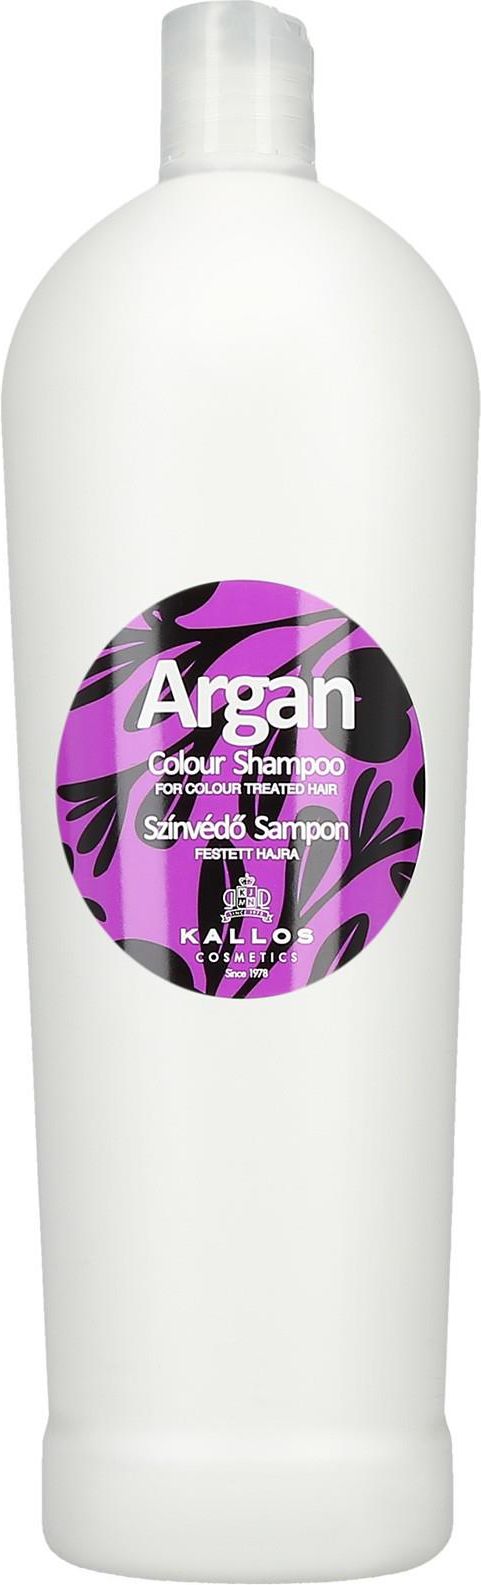 kallos argan szampon do włosów farbowanych